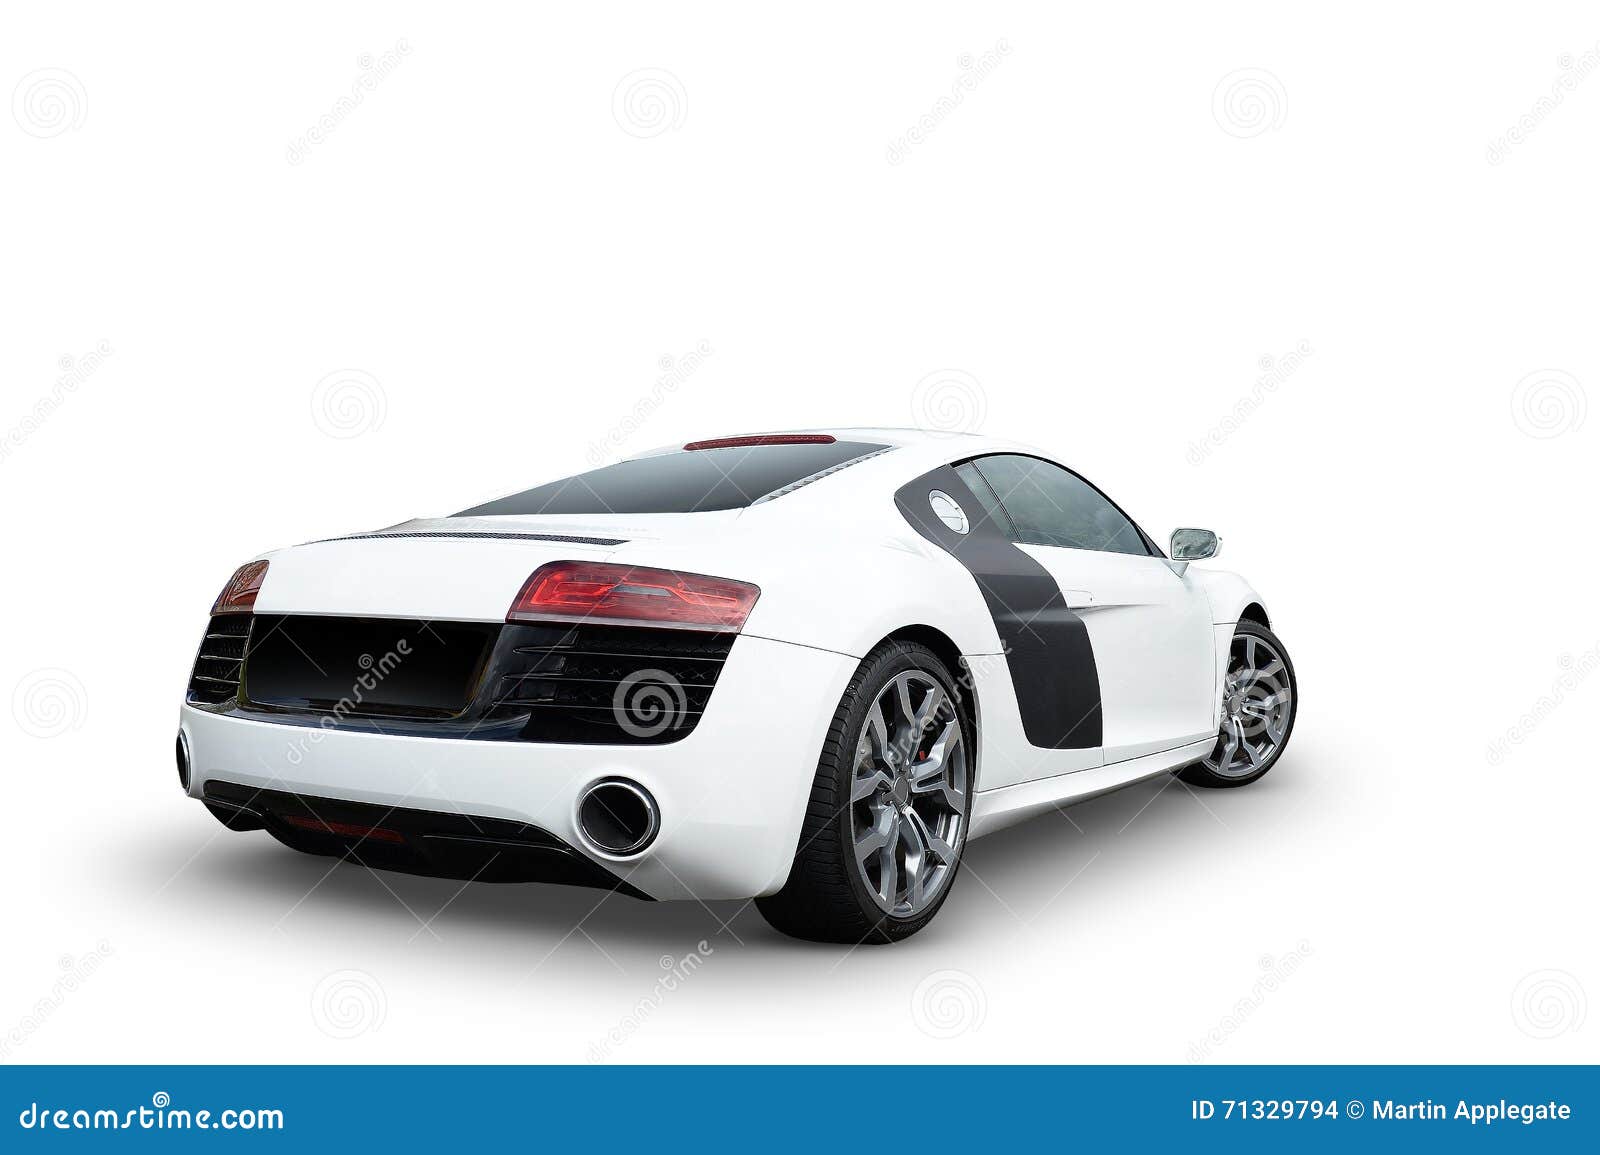 luxury r8 audi sports car